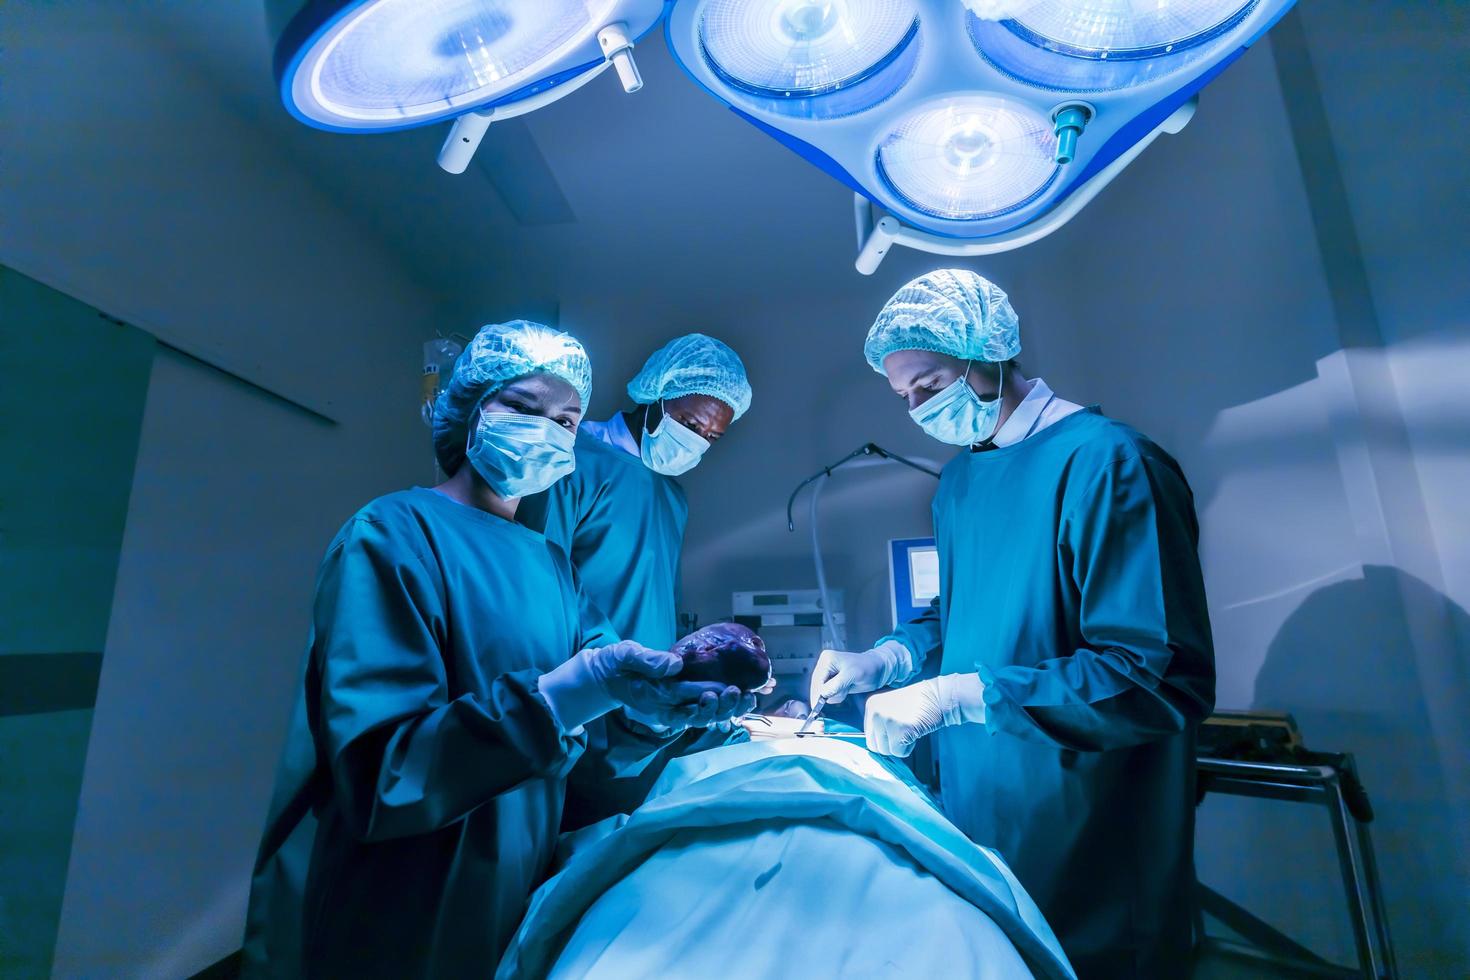 el equipo de médicos cirujanos está realizando una operación de cirugía cardíaca para pacientes de donantes de órganos para salvar más vidas en la sala de cirugía de emergencia foto